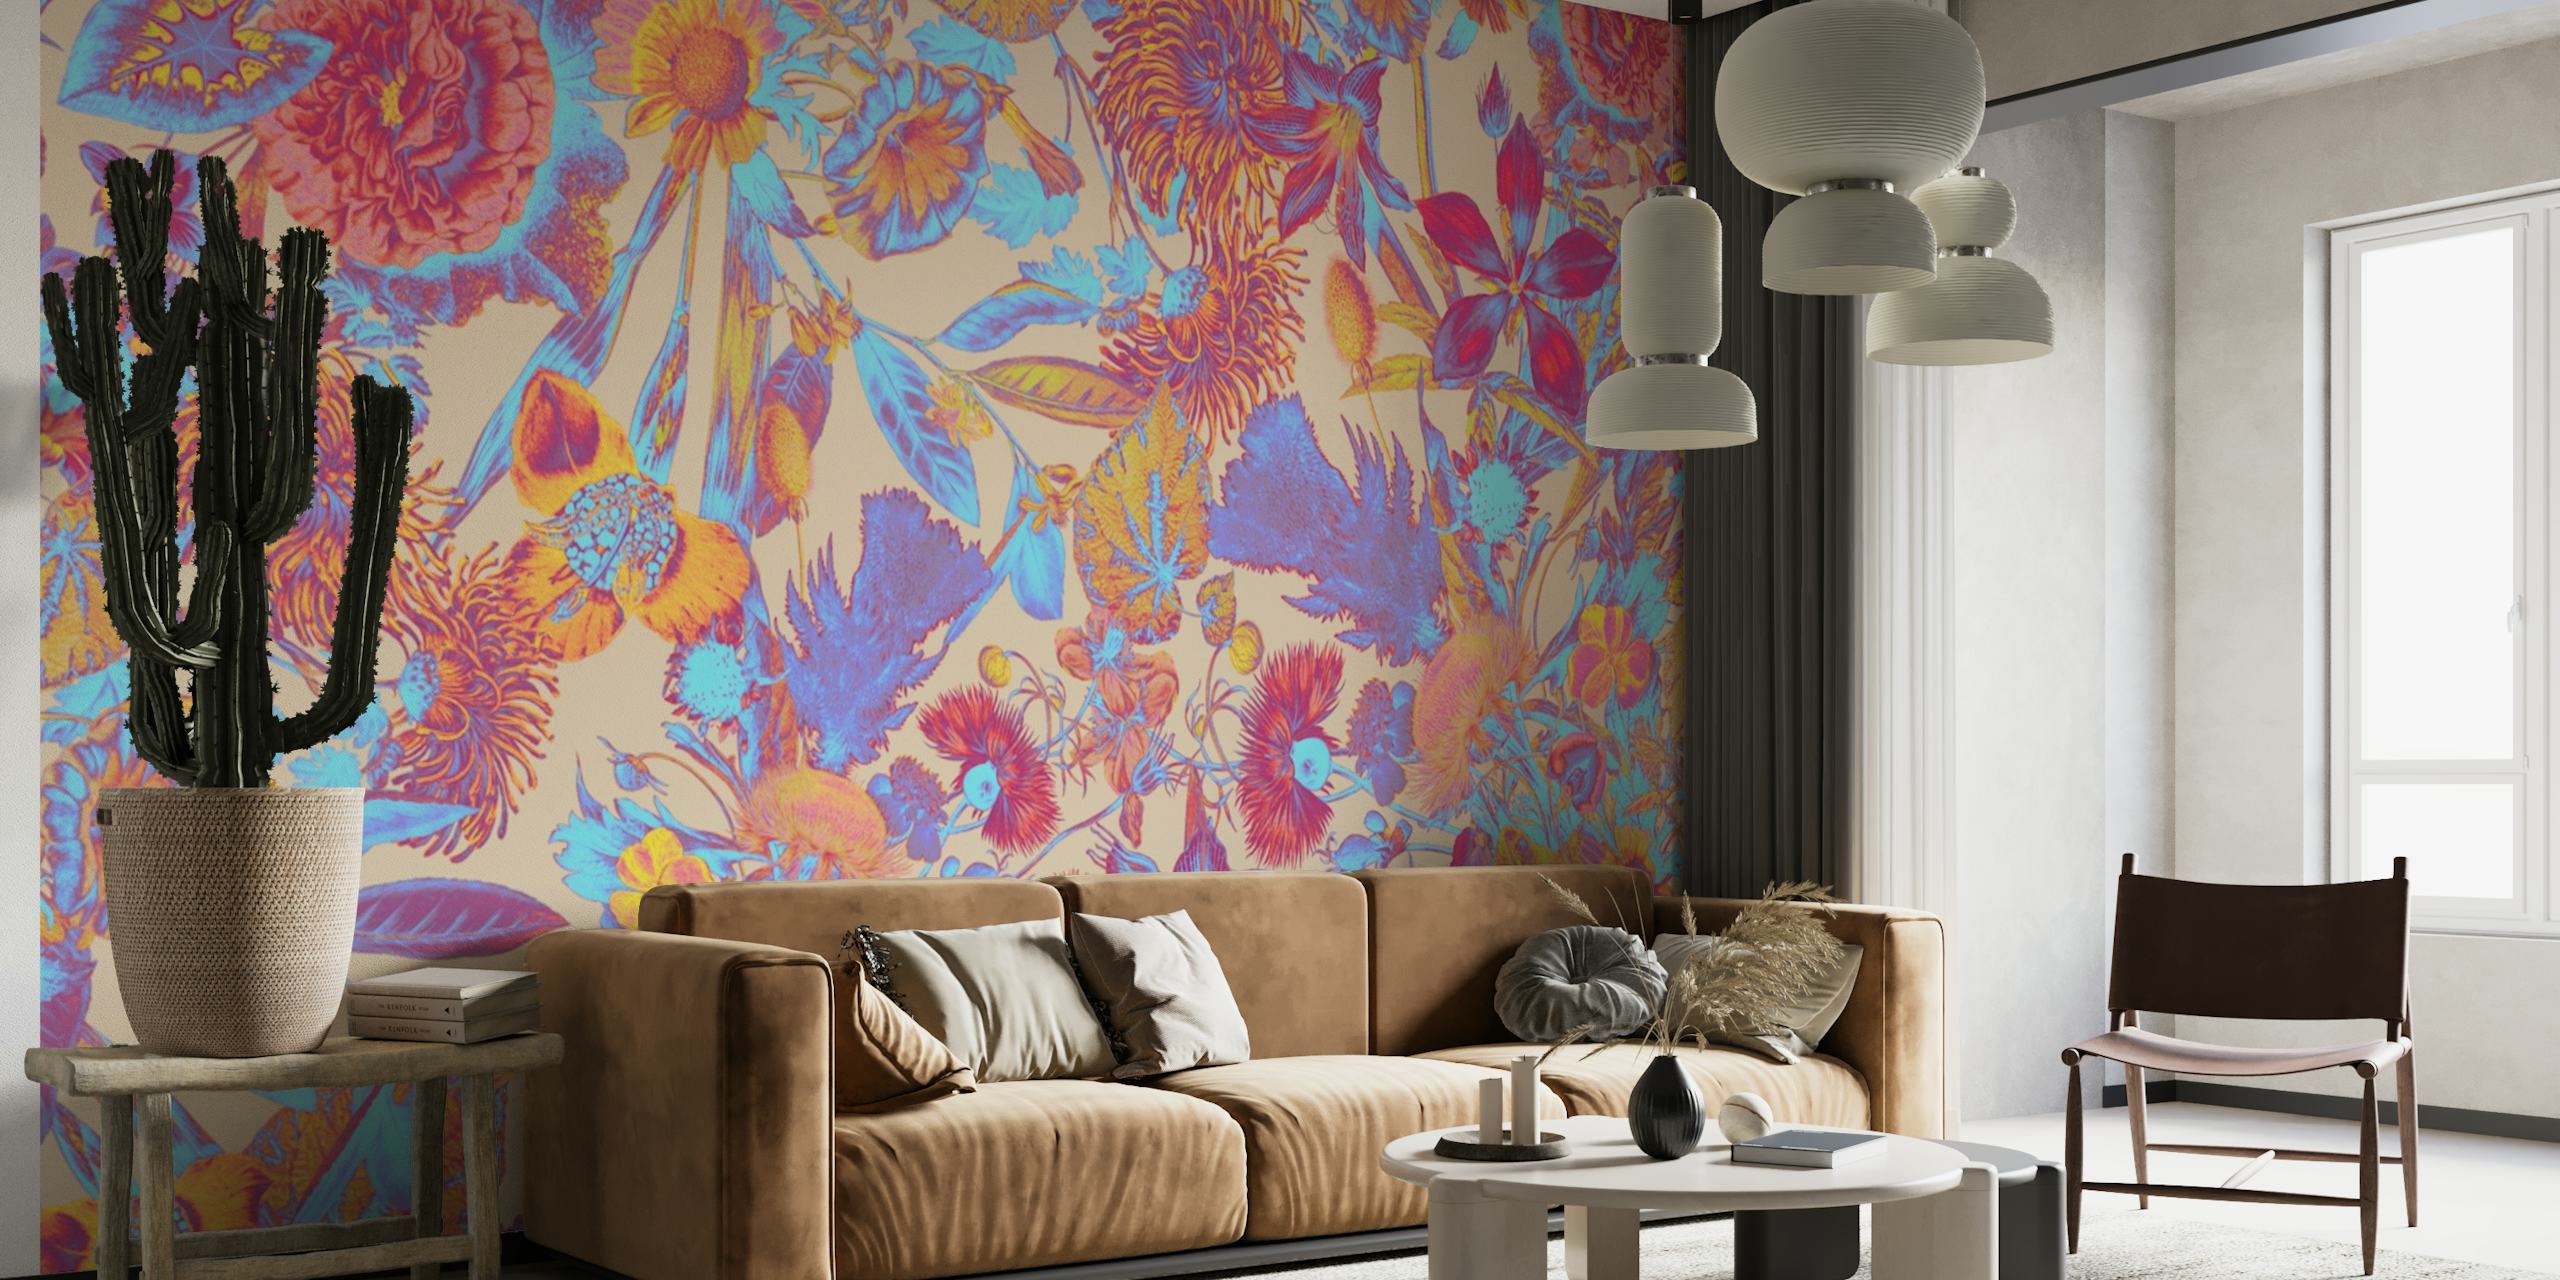 Um mural de parede colorido com um complexo padrão floral multicolorido.